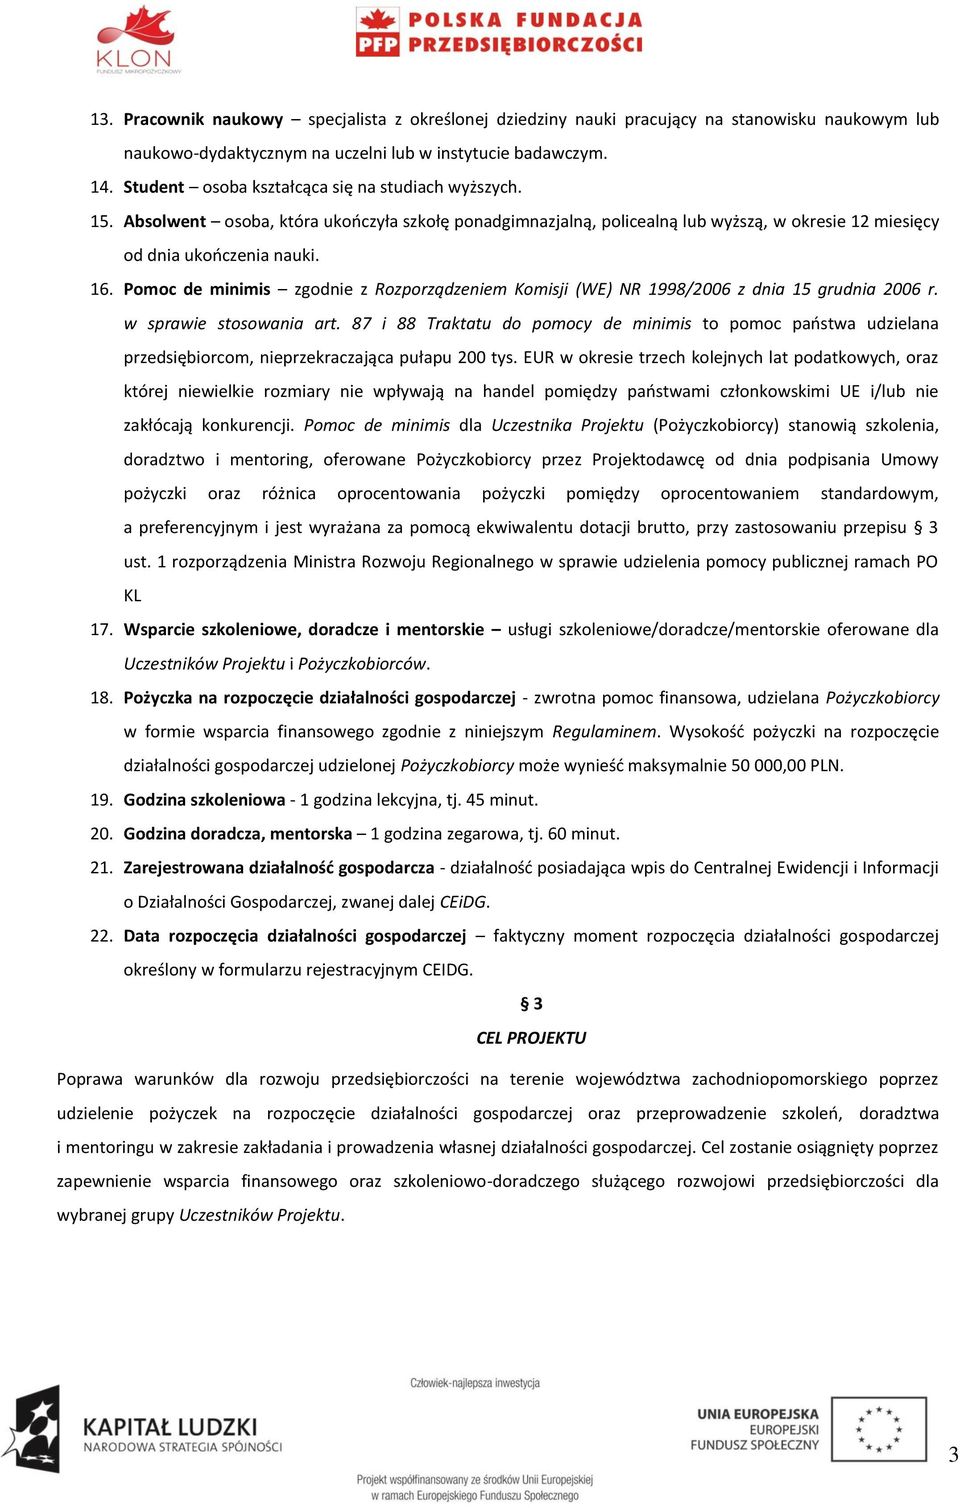 Pomoc de minimis zgodnie z Rozporządzeniem Komisji (WE) NR 1998/2006 z dnia 15 grudnia 2006 r. w sprawie stosowania art.